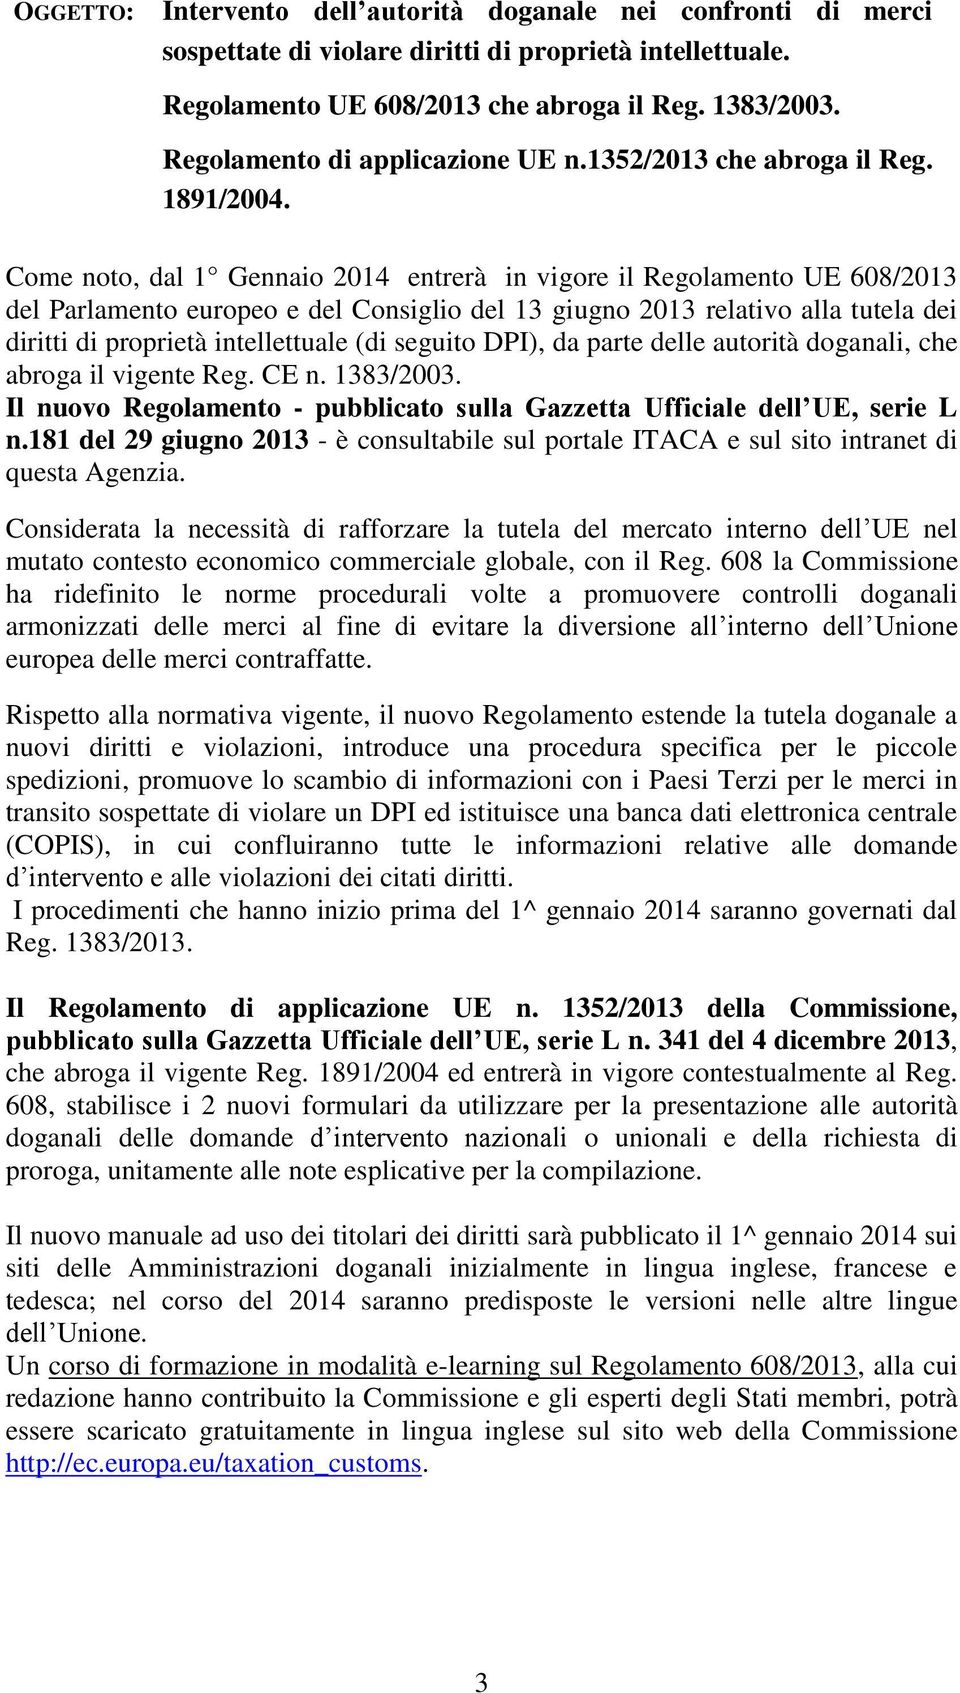 Come noto, dal 1 Gennaio 2014 entrerà in vigore il Regolamento UE 608/2013 del Parlamento europeo e del Consiglio del 13 giugno 2013 relativo alla tutela dei diritti di proprietà intellettuale (di